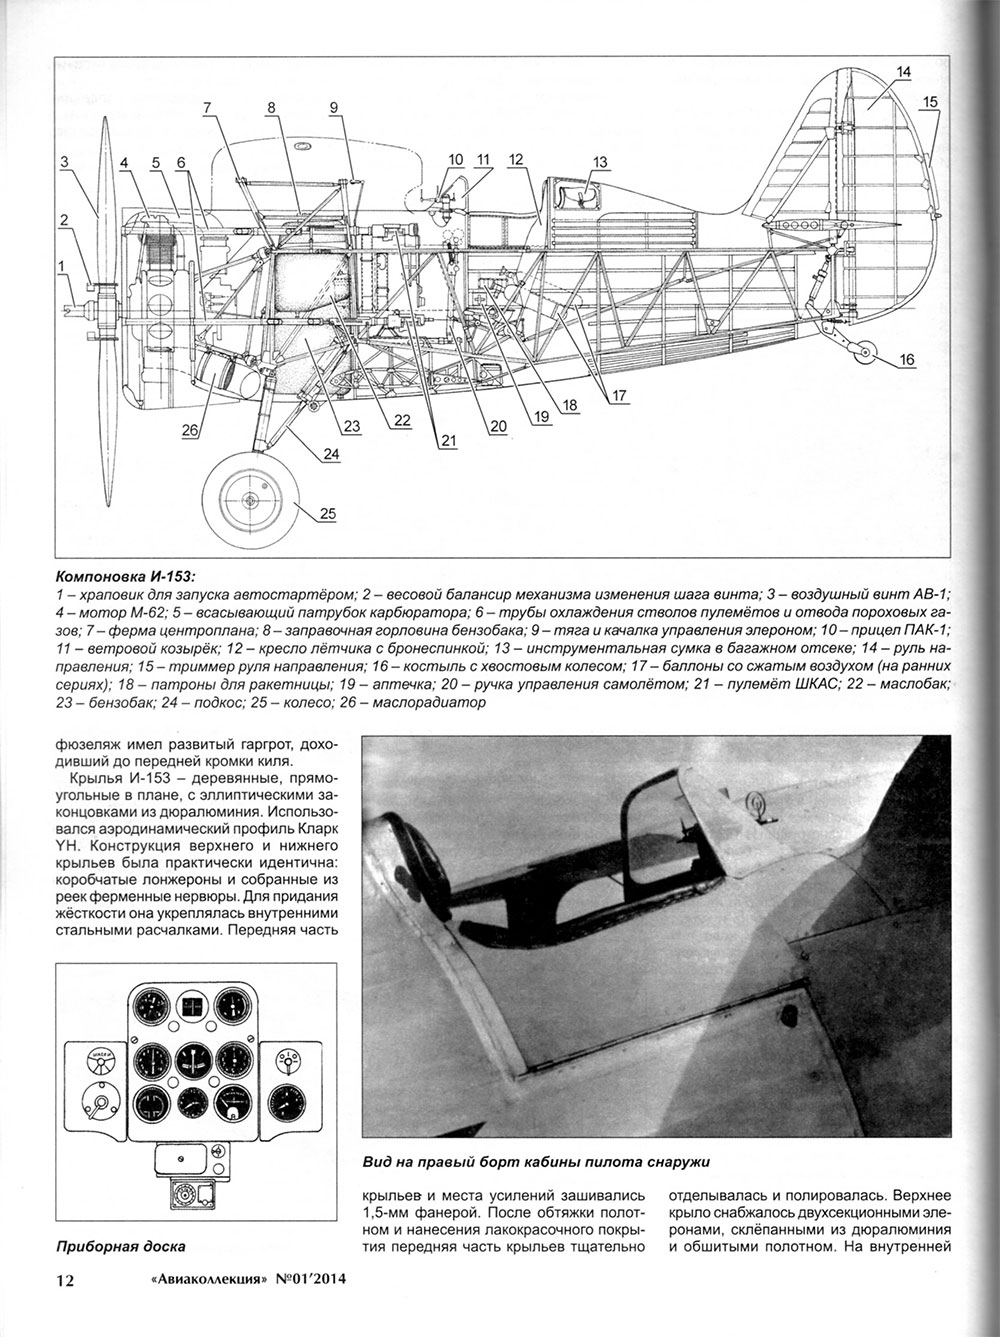 AKL-201401 Авиаколлекция 2014 №1 Истребитель И-153 `Чайка` (Автор - М. Маслов)